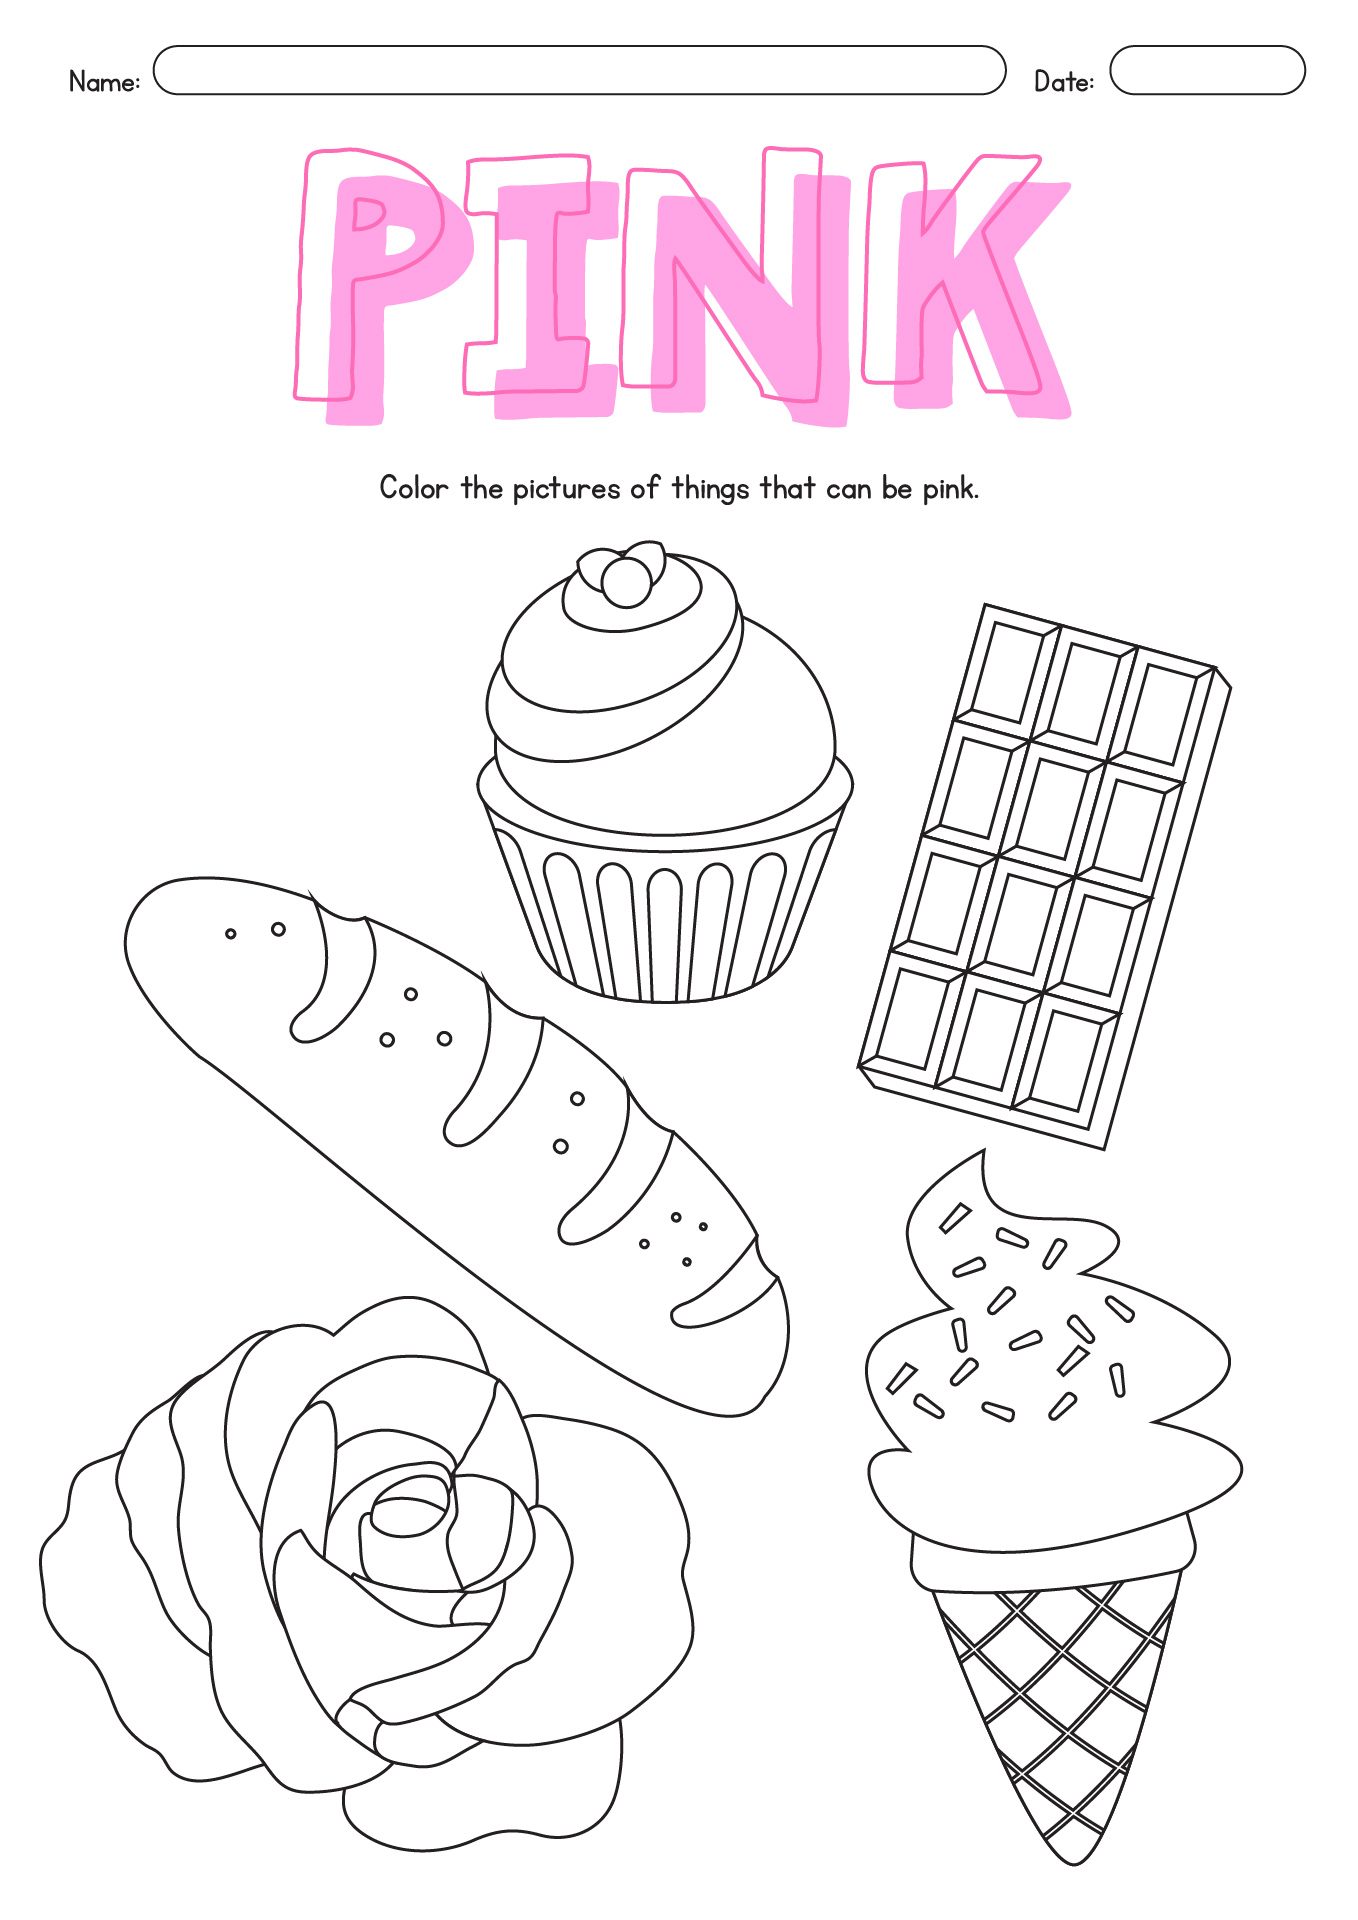 Pink Color Activities and Worksheets for Kindergarten